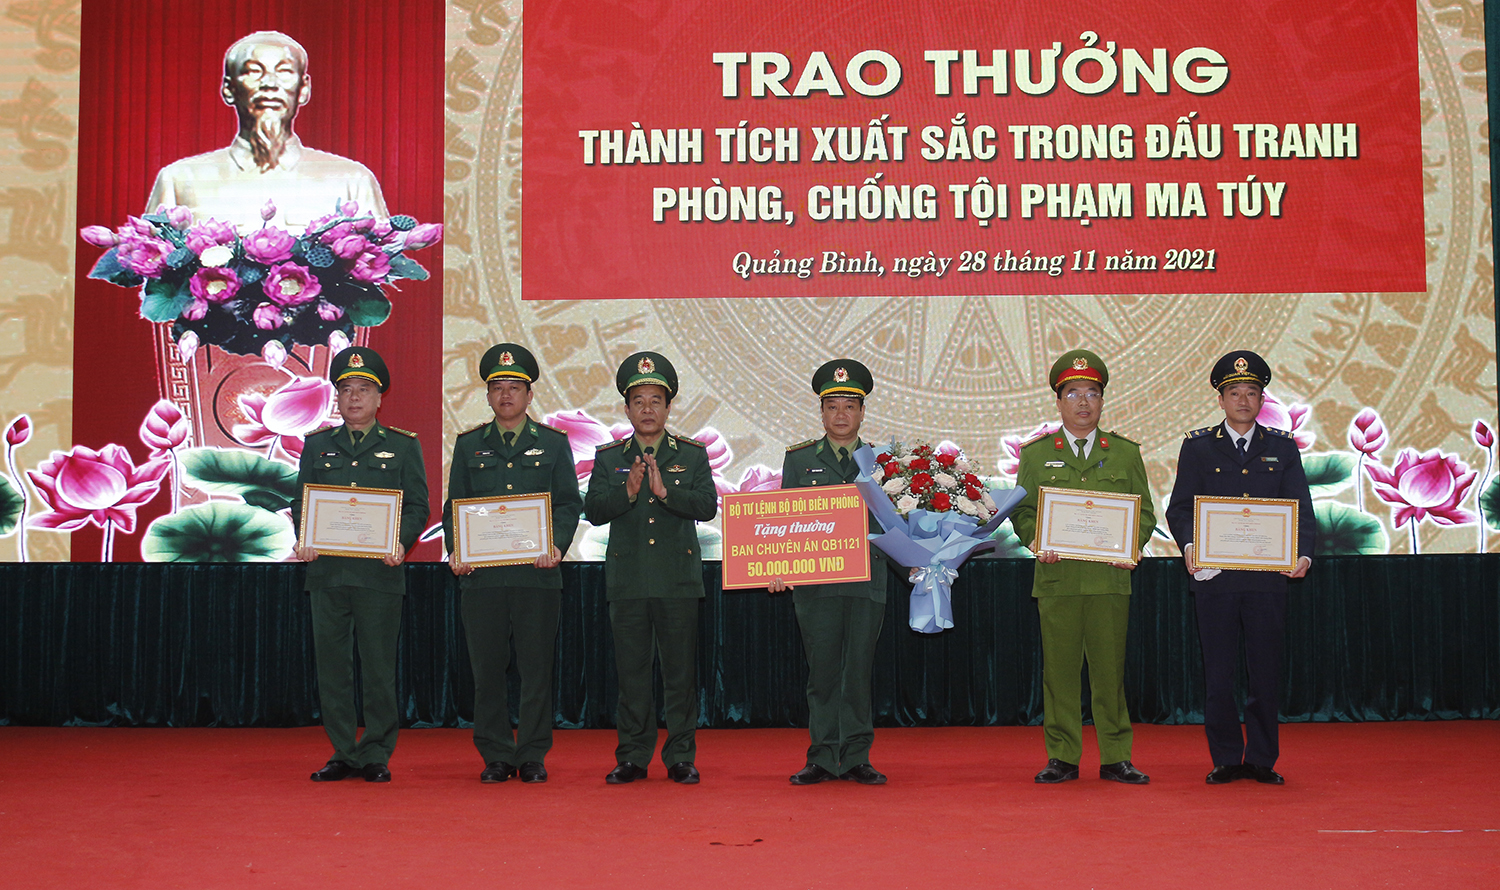 Trung tướng Lê Đức Thái, Tư lệnh BĐBP trao thưởng lãnh đạo Ban chuyên án QB1121 (Bộ chỉ huy BĐBP tỉnh).